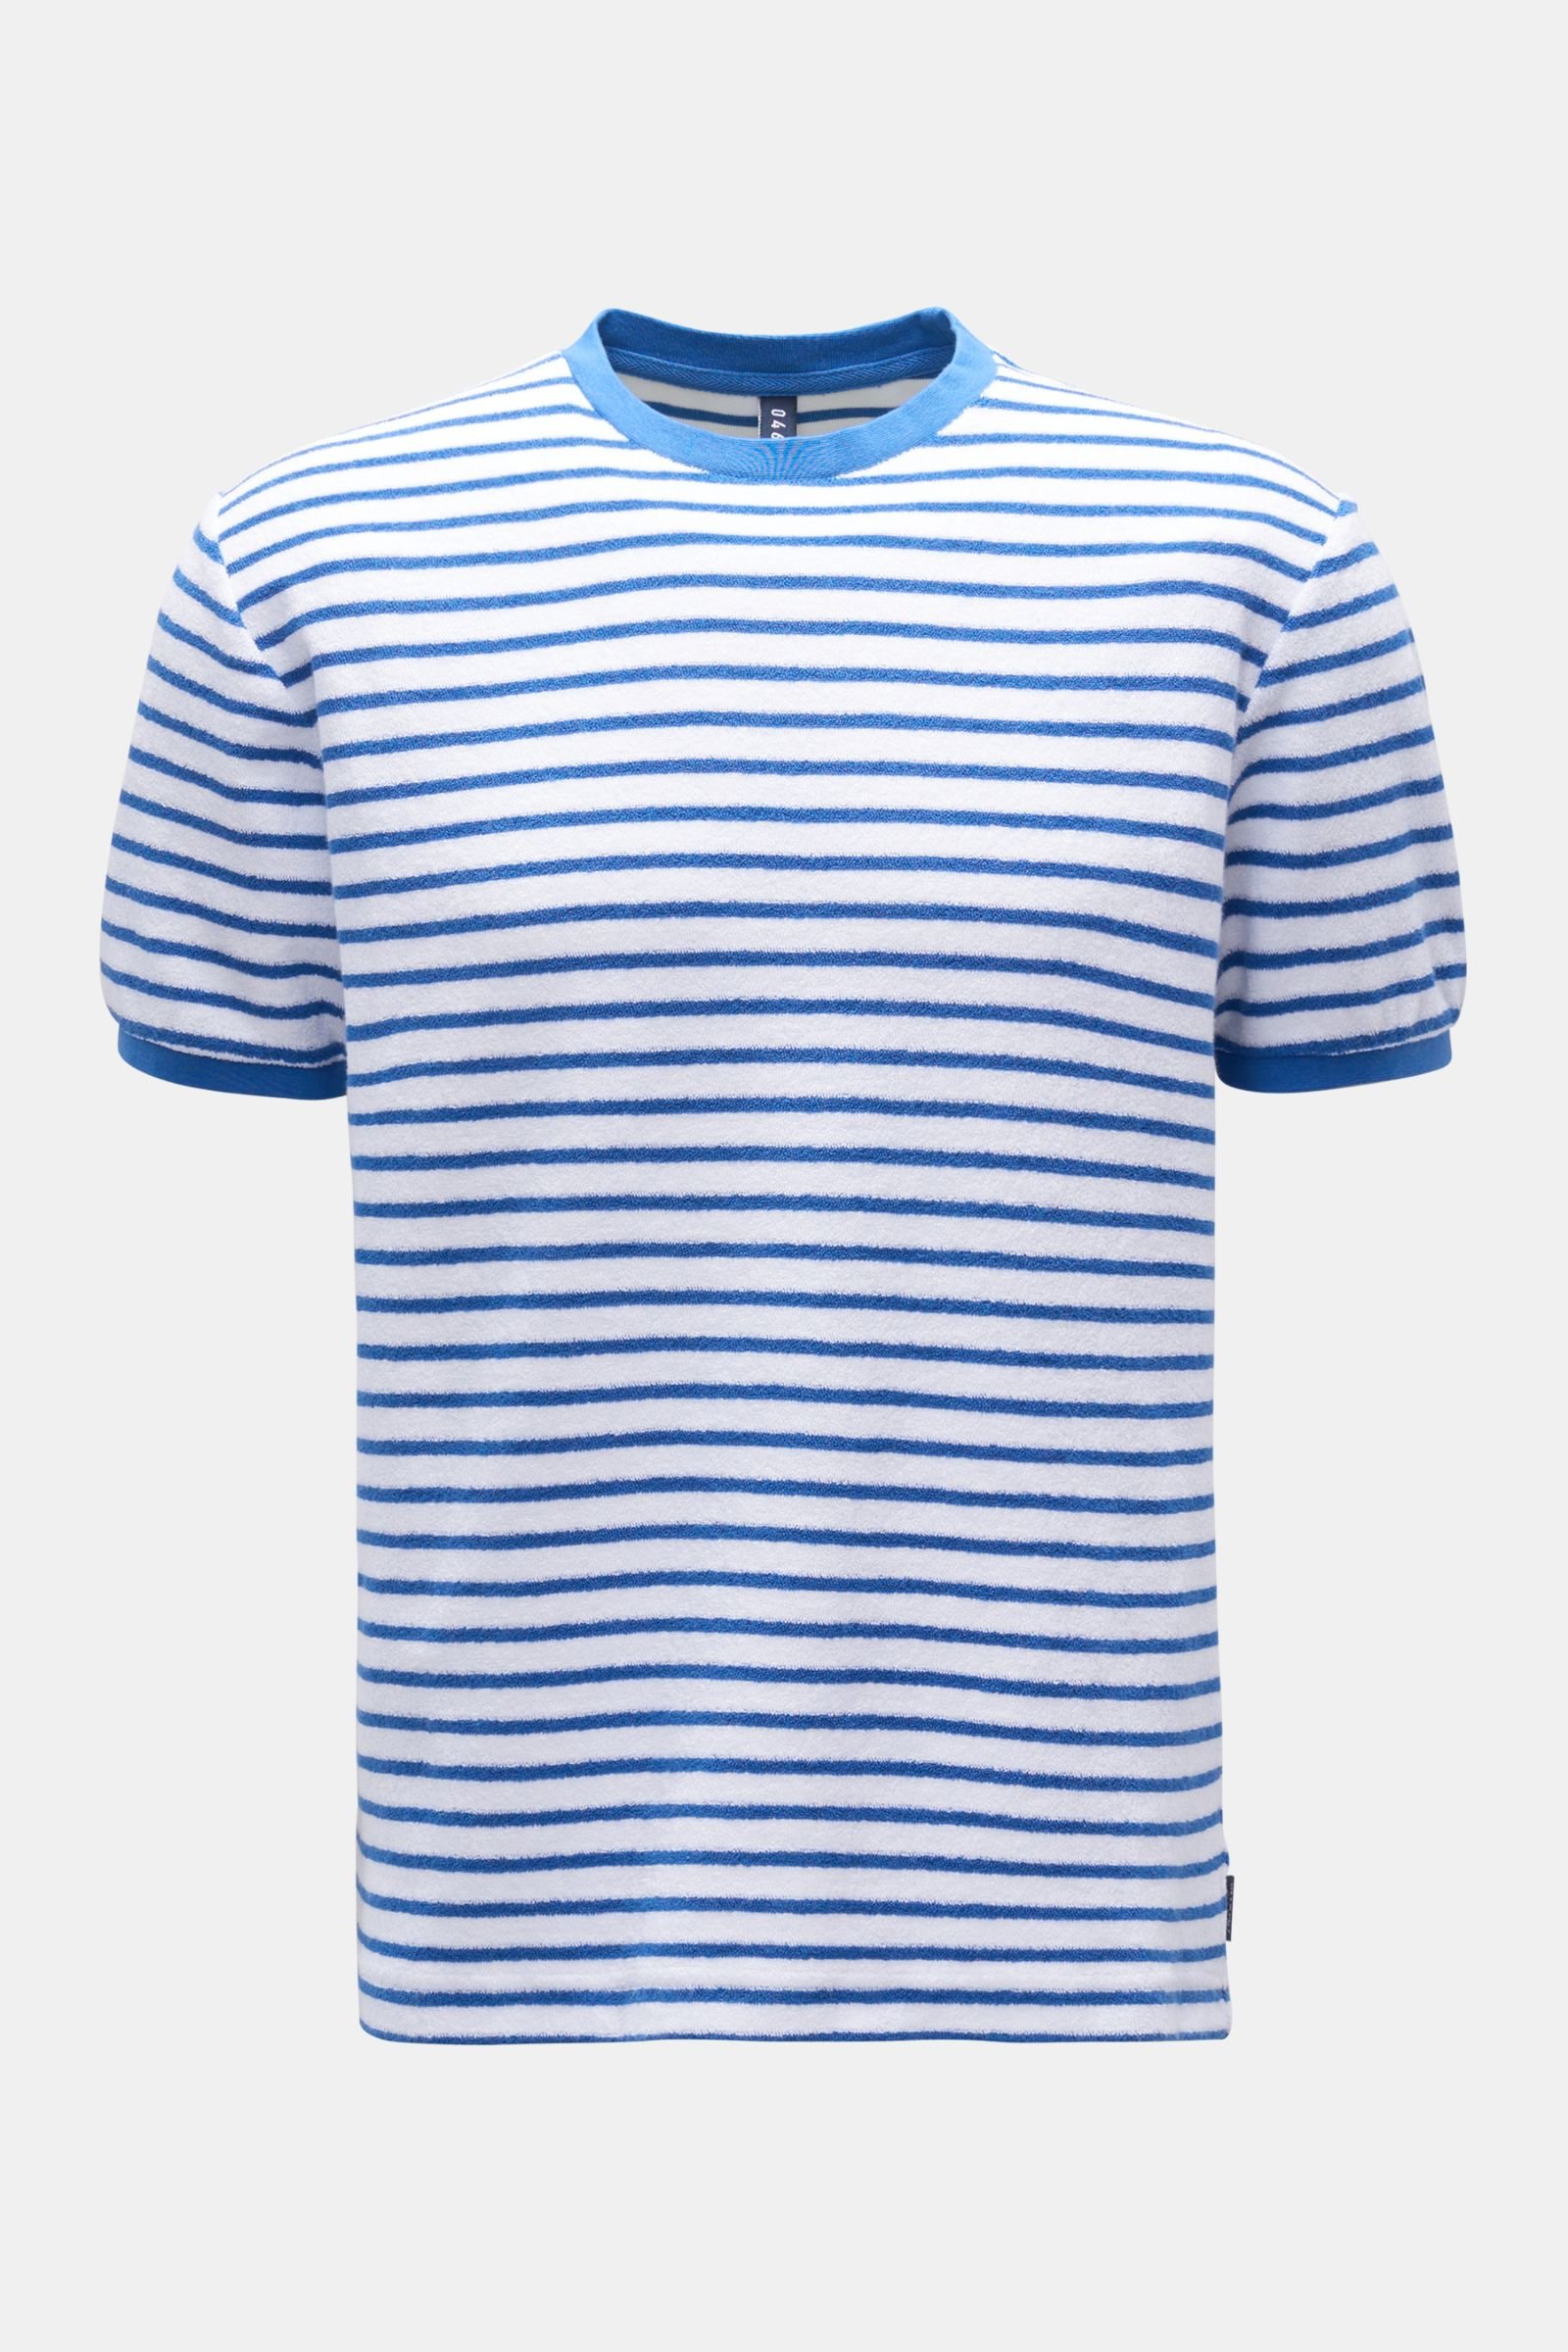 Terry crew neck T-shirt 'Terry Stripe Tee' blue/white striped